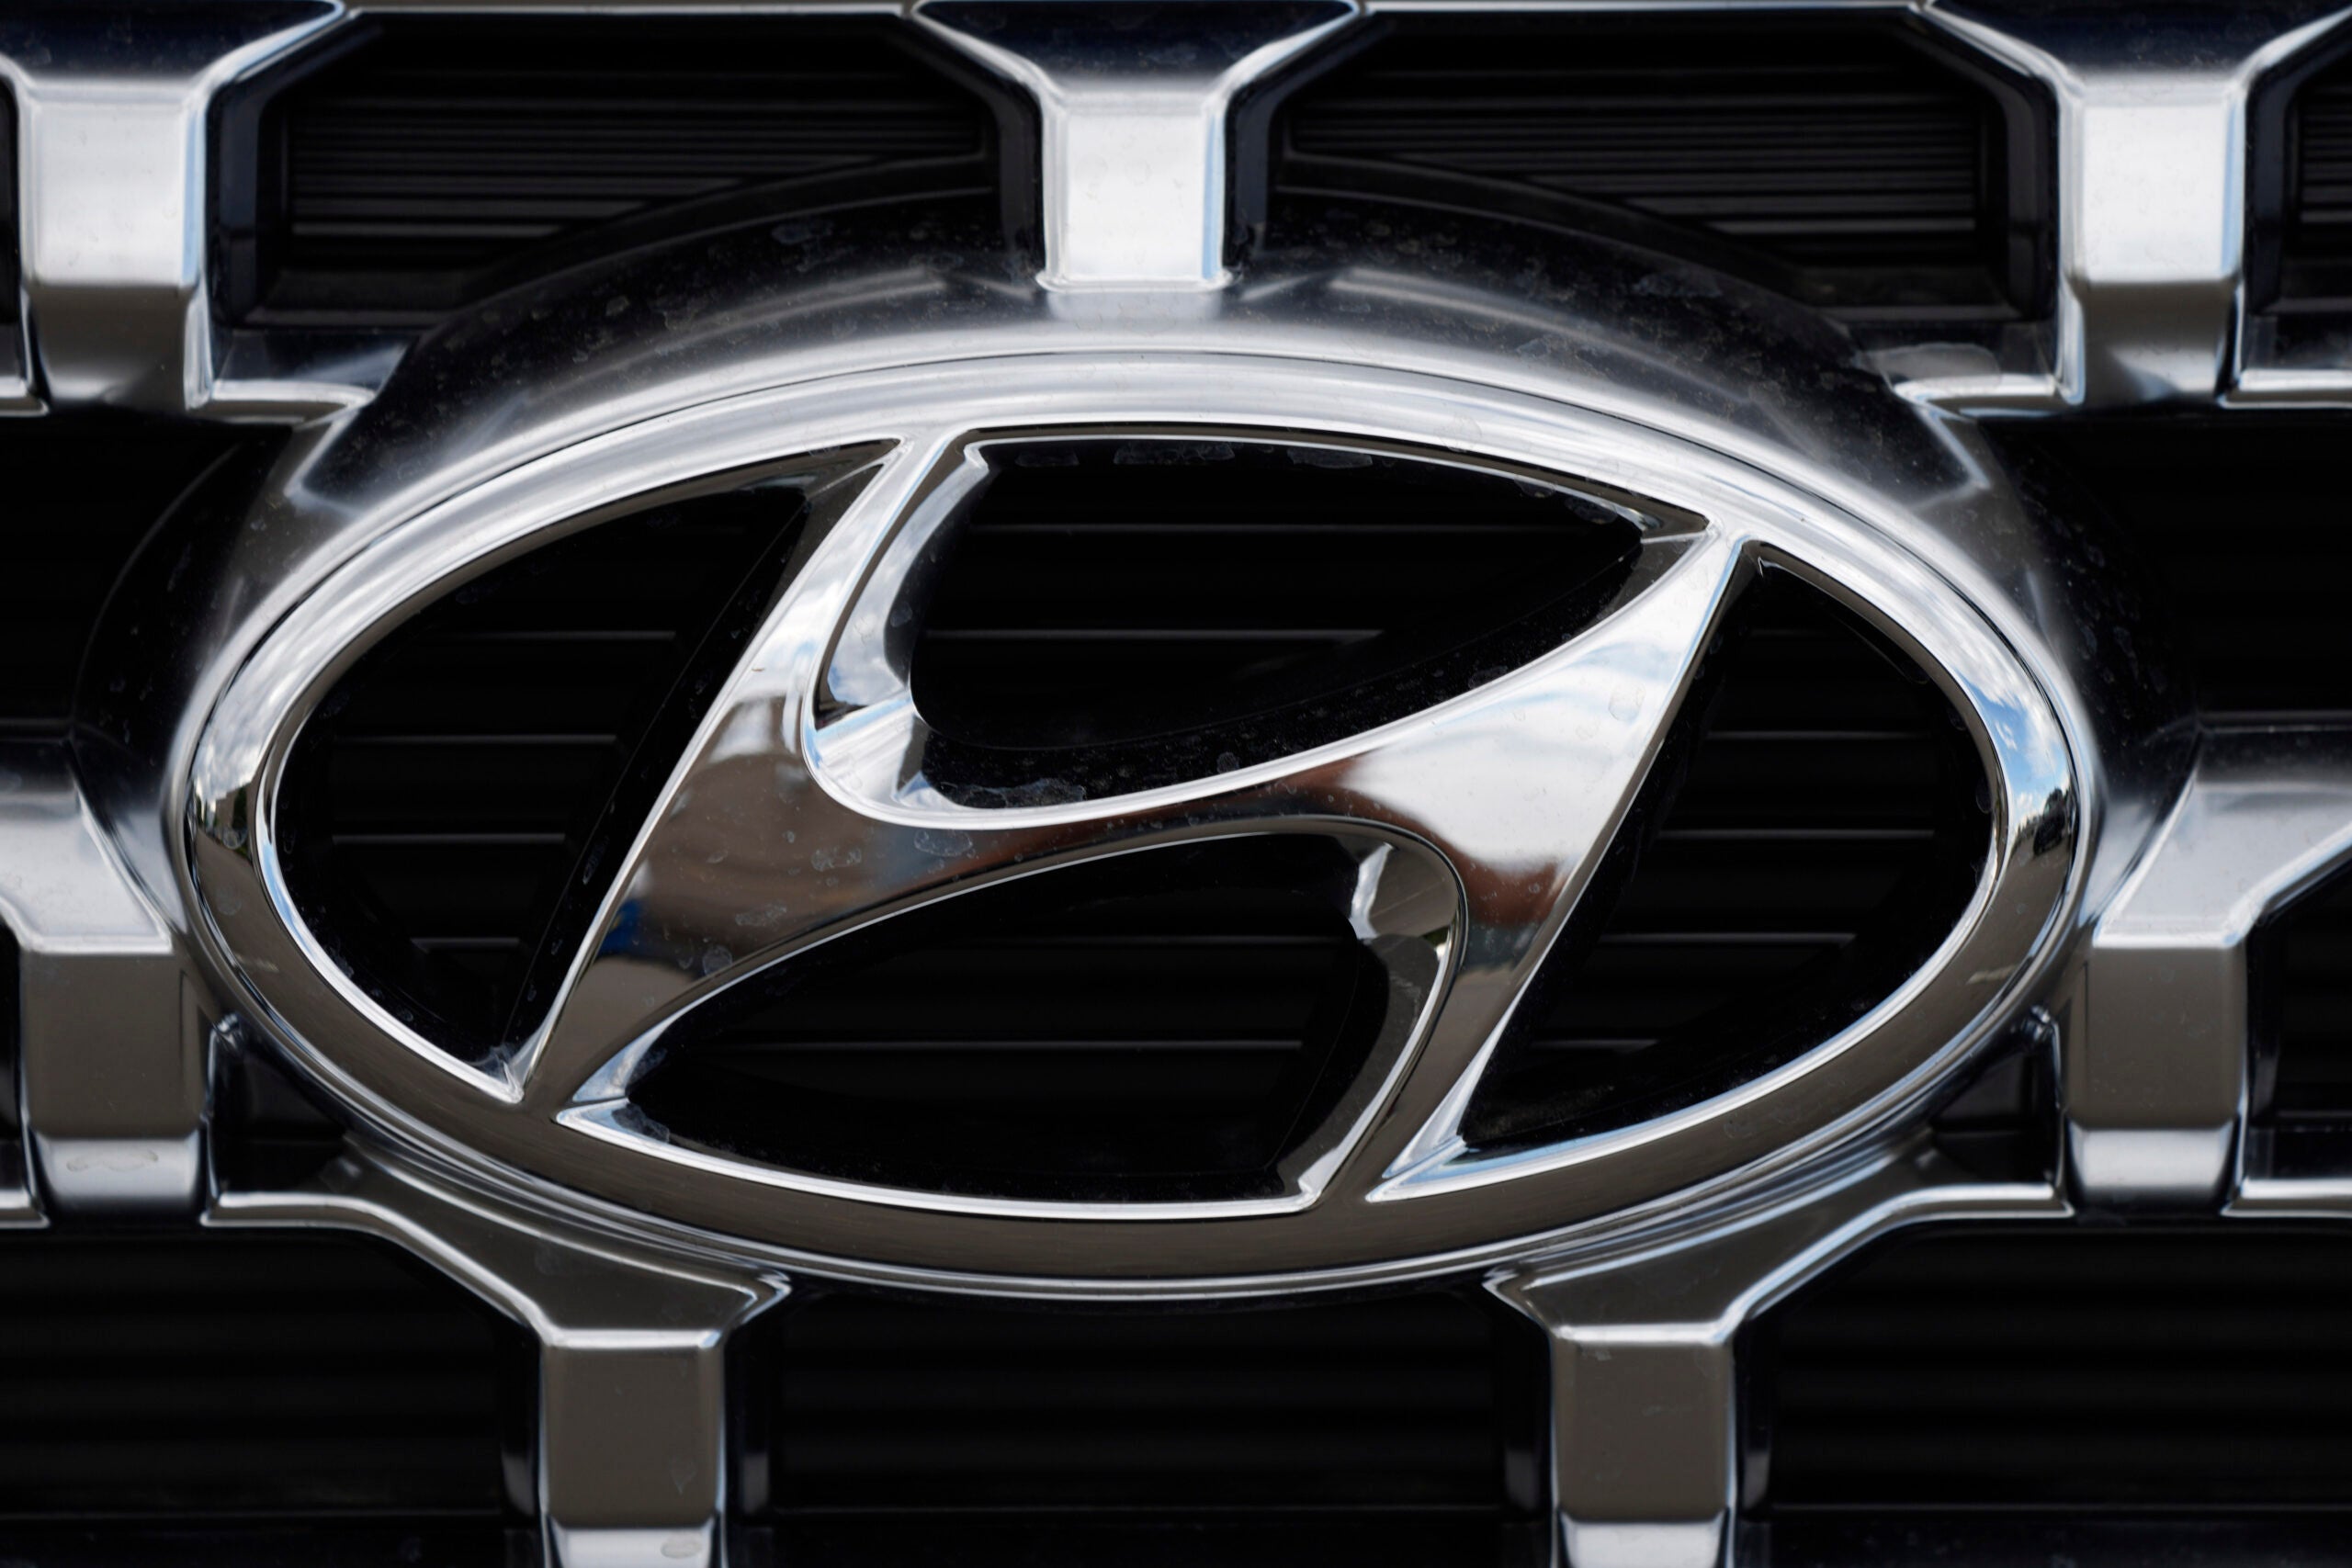 The Hyundai company logo.